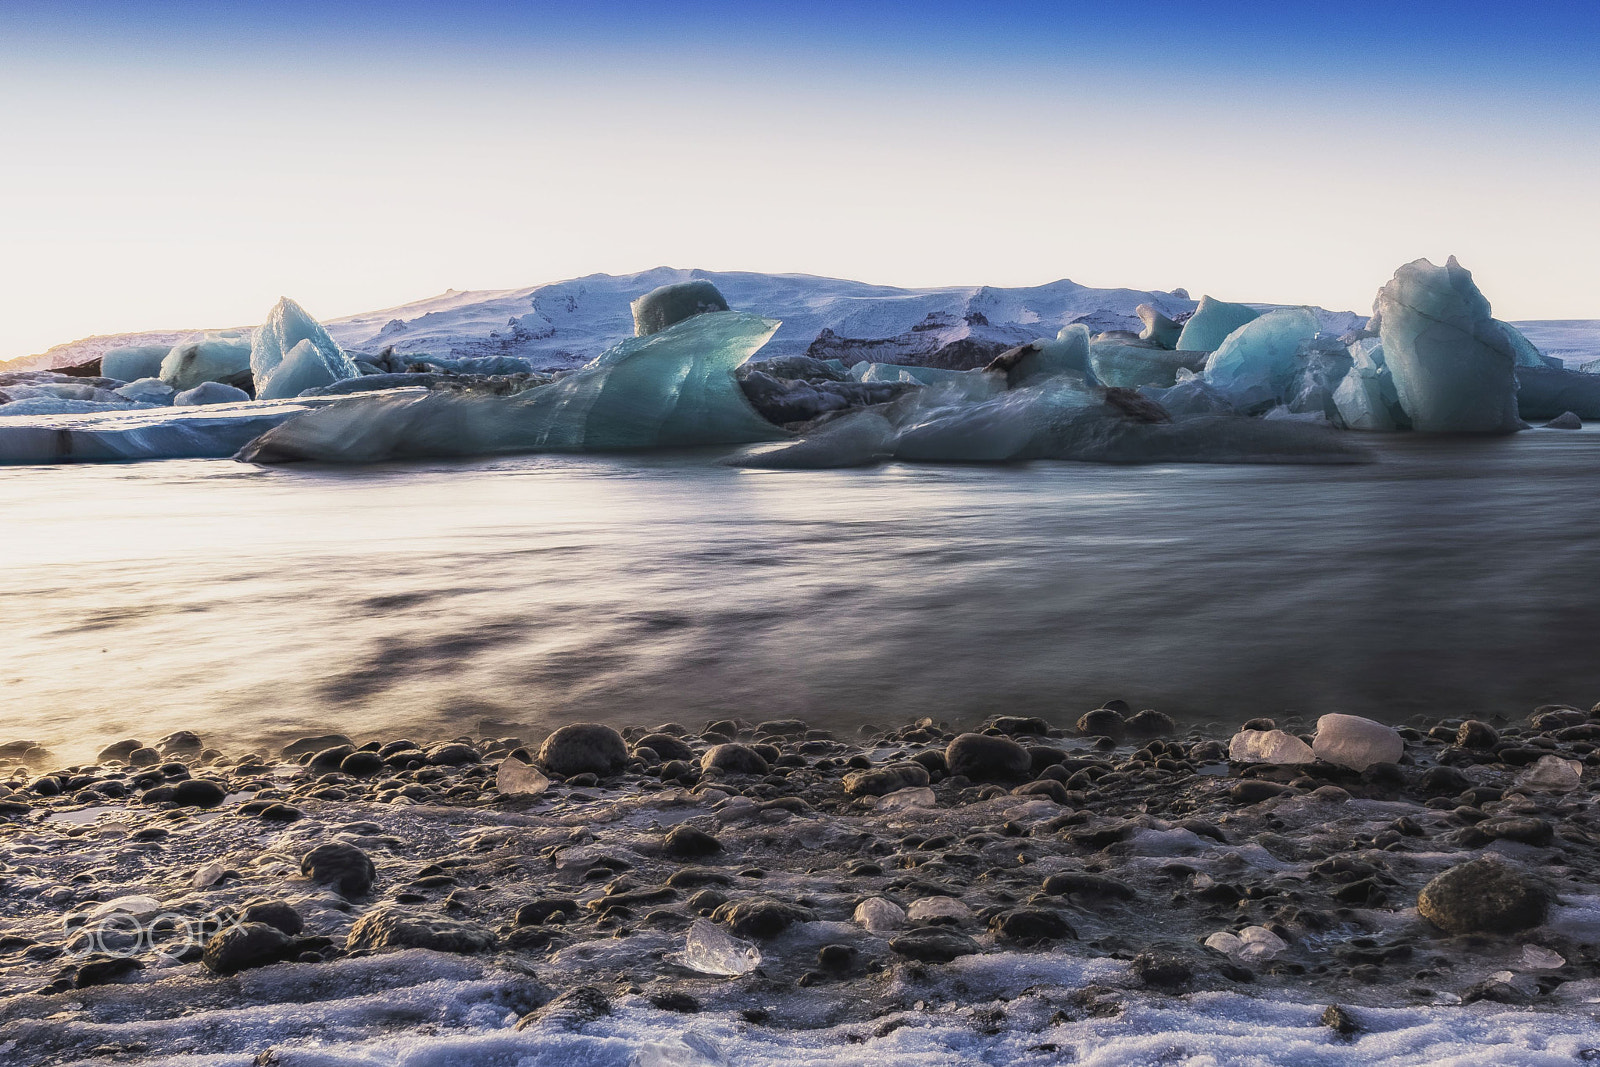 ZEISS Touit 12mm F2.8 sample photo. Glacier lagoon - jökulsárlón photography